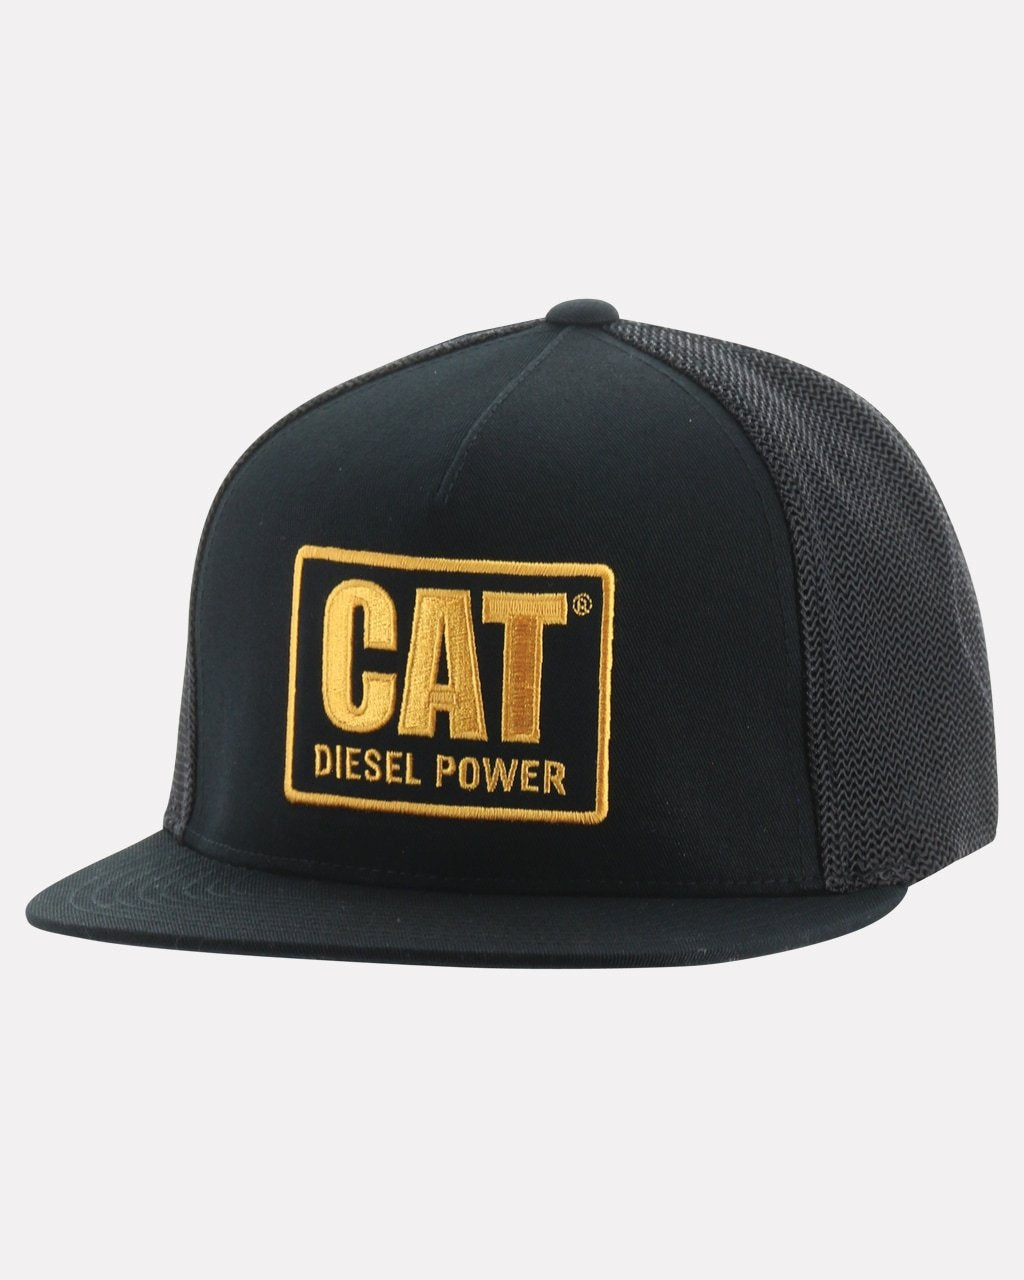 CAT Men's Diesel Power Flat Bill Cap - Work World - Workwear, Work Boots, Safety Gear